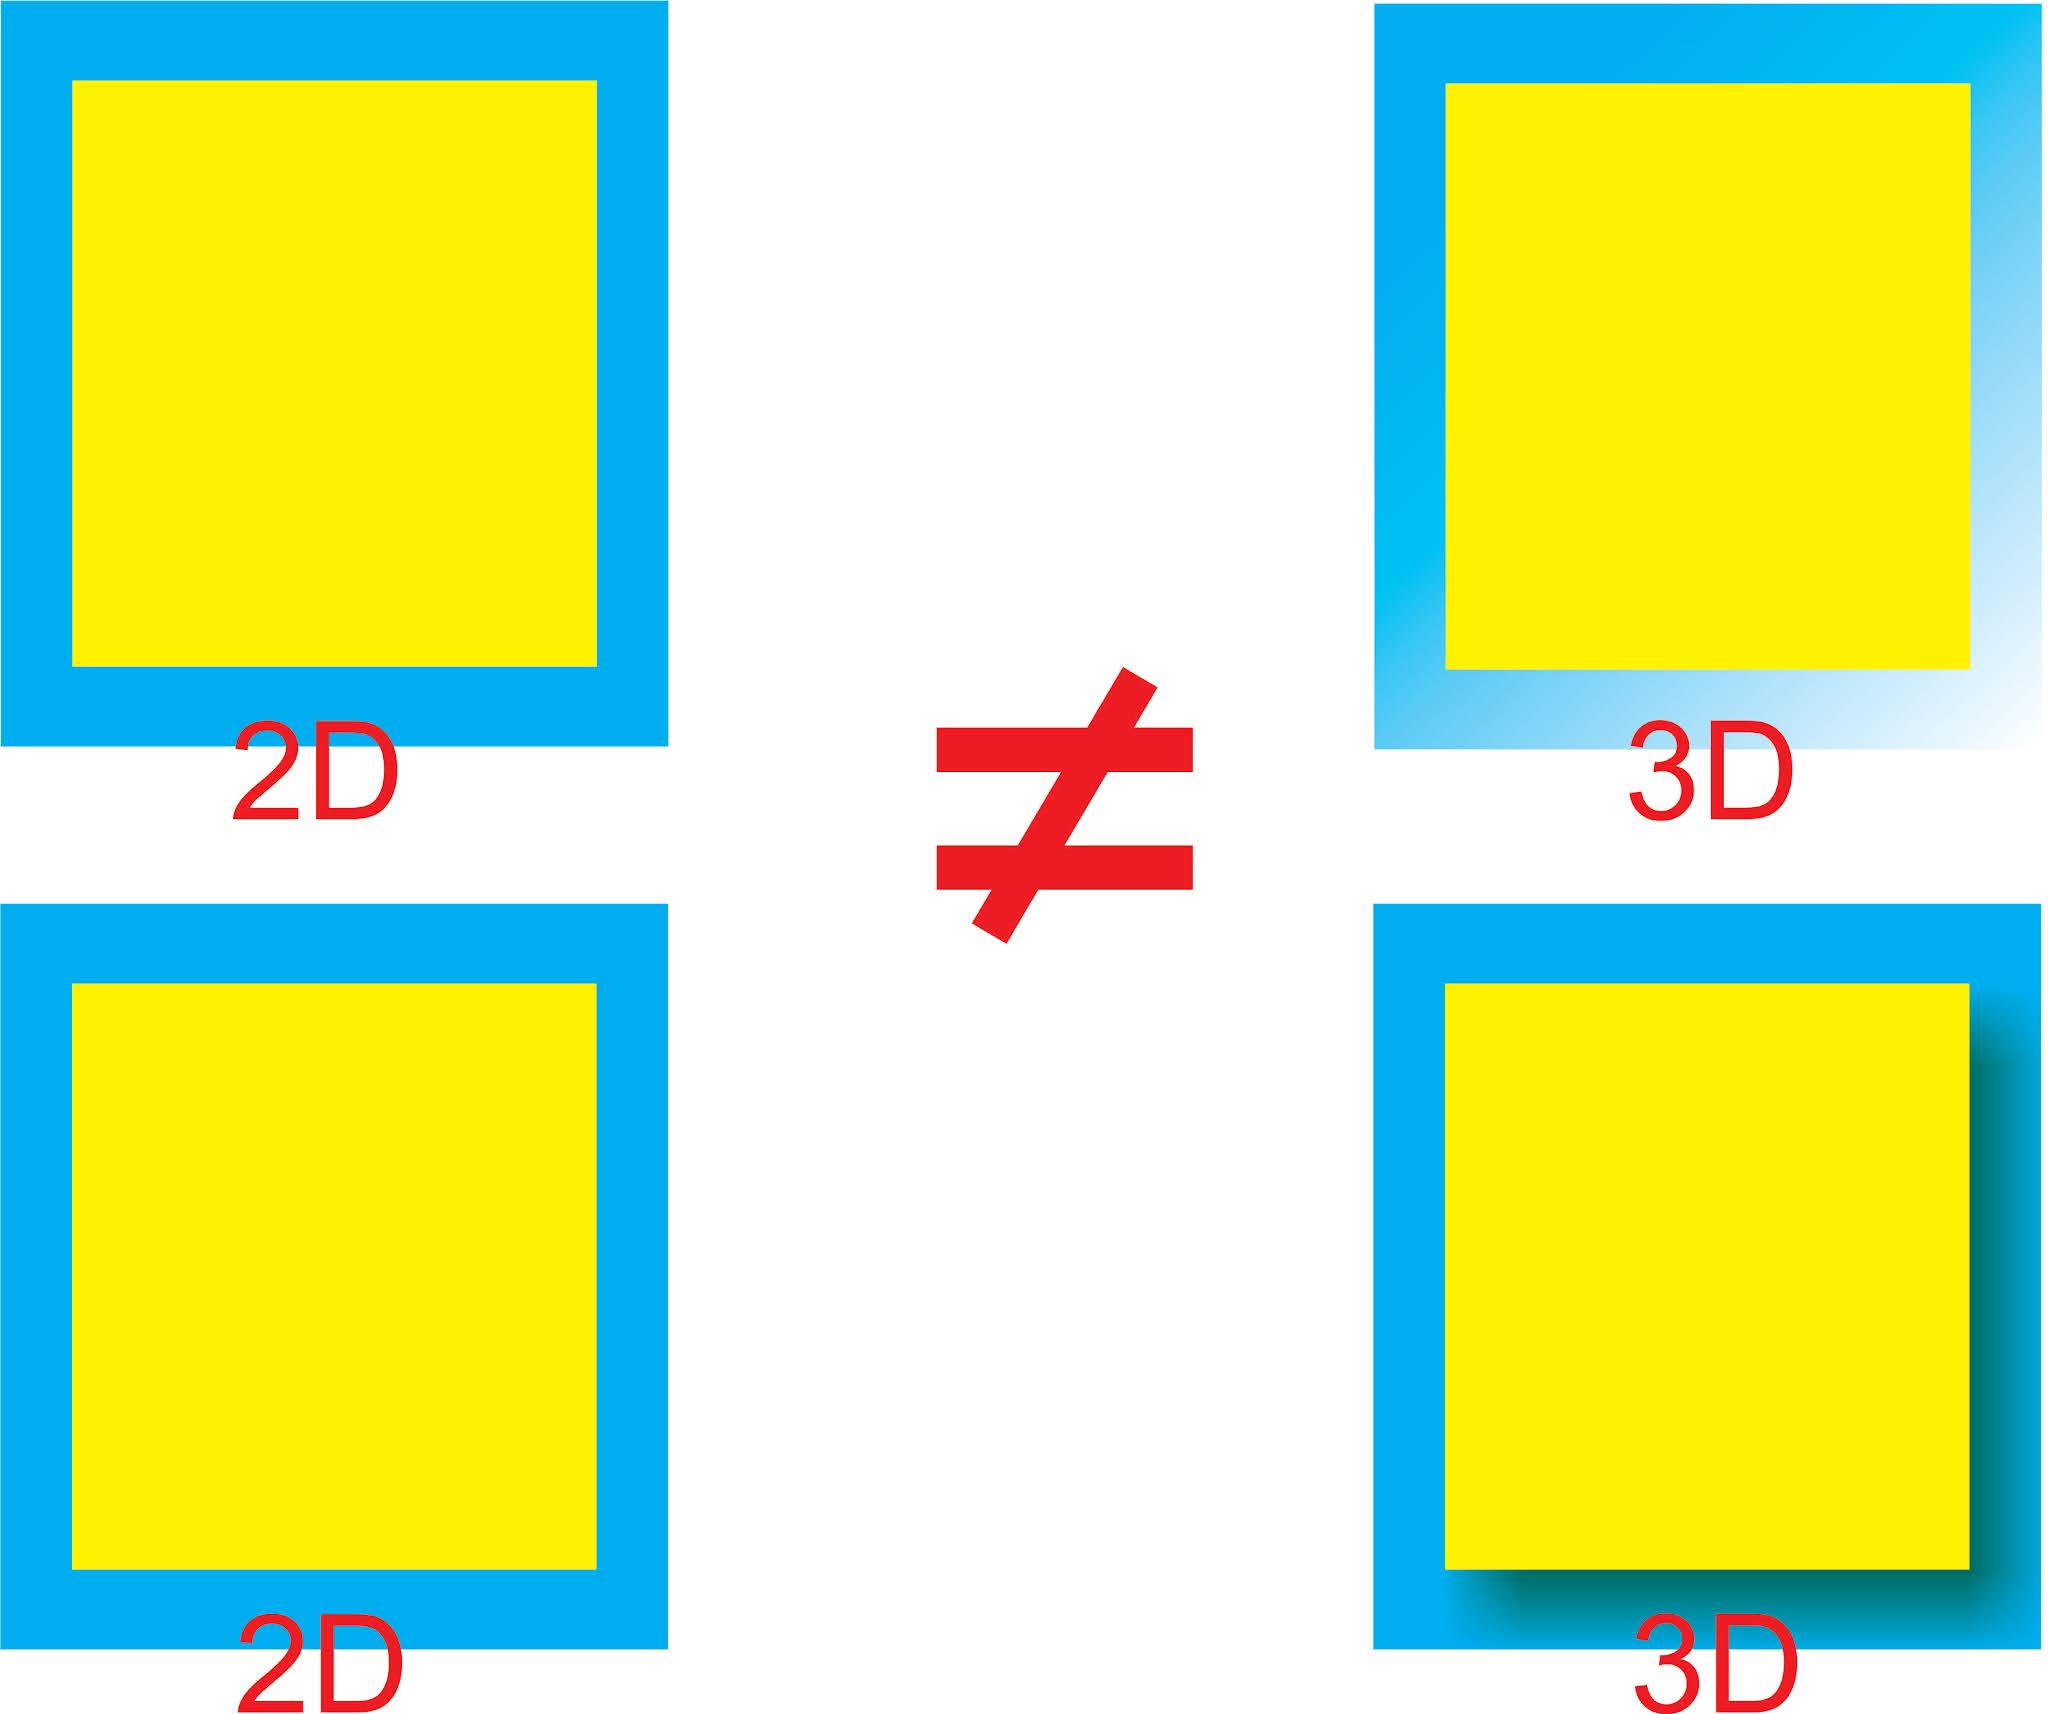 2D là gì? Khám phá Thế giới Đồ họa Hai Chiều và Ứng dụng trong Đời Sống